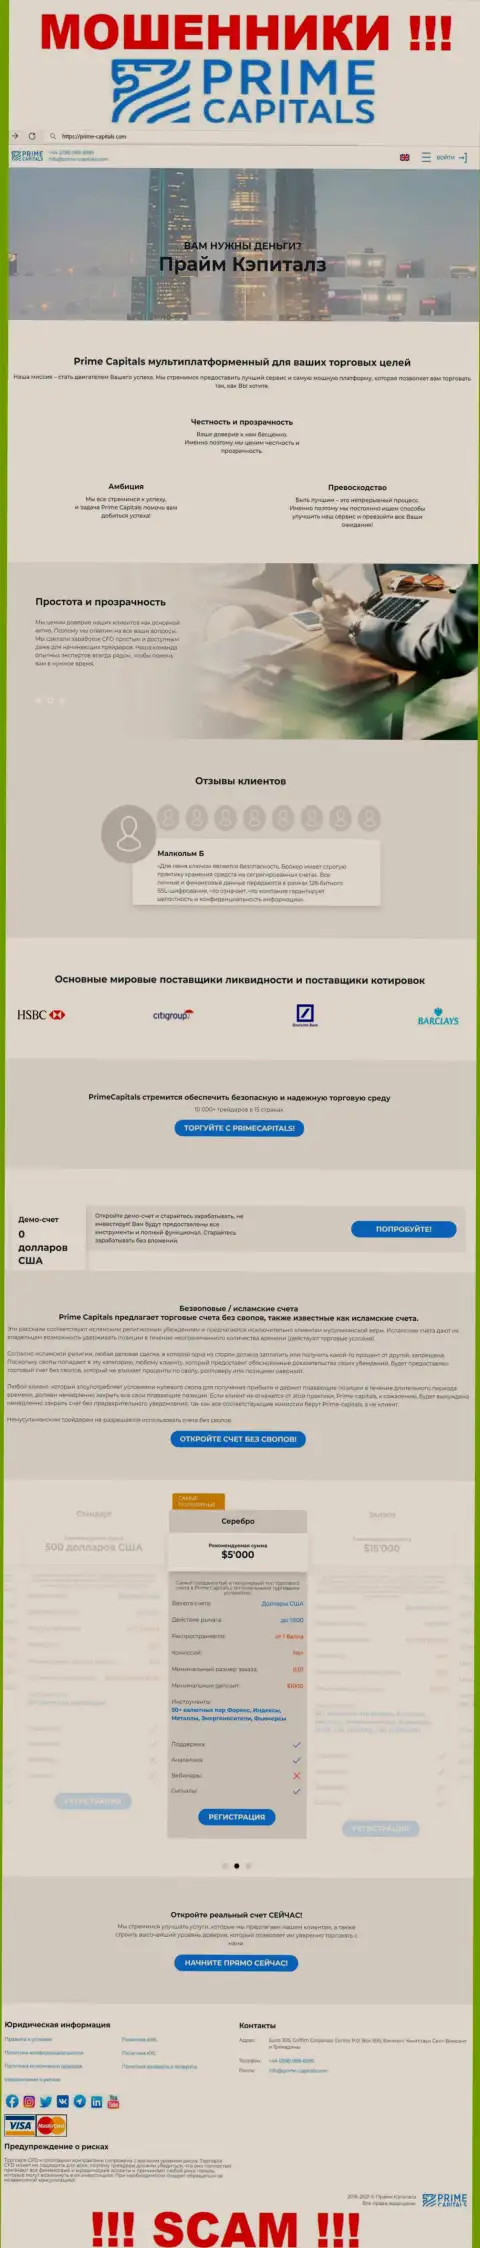 Официальный портал мошенников Прайм Капиталс